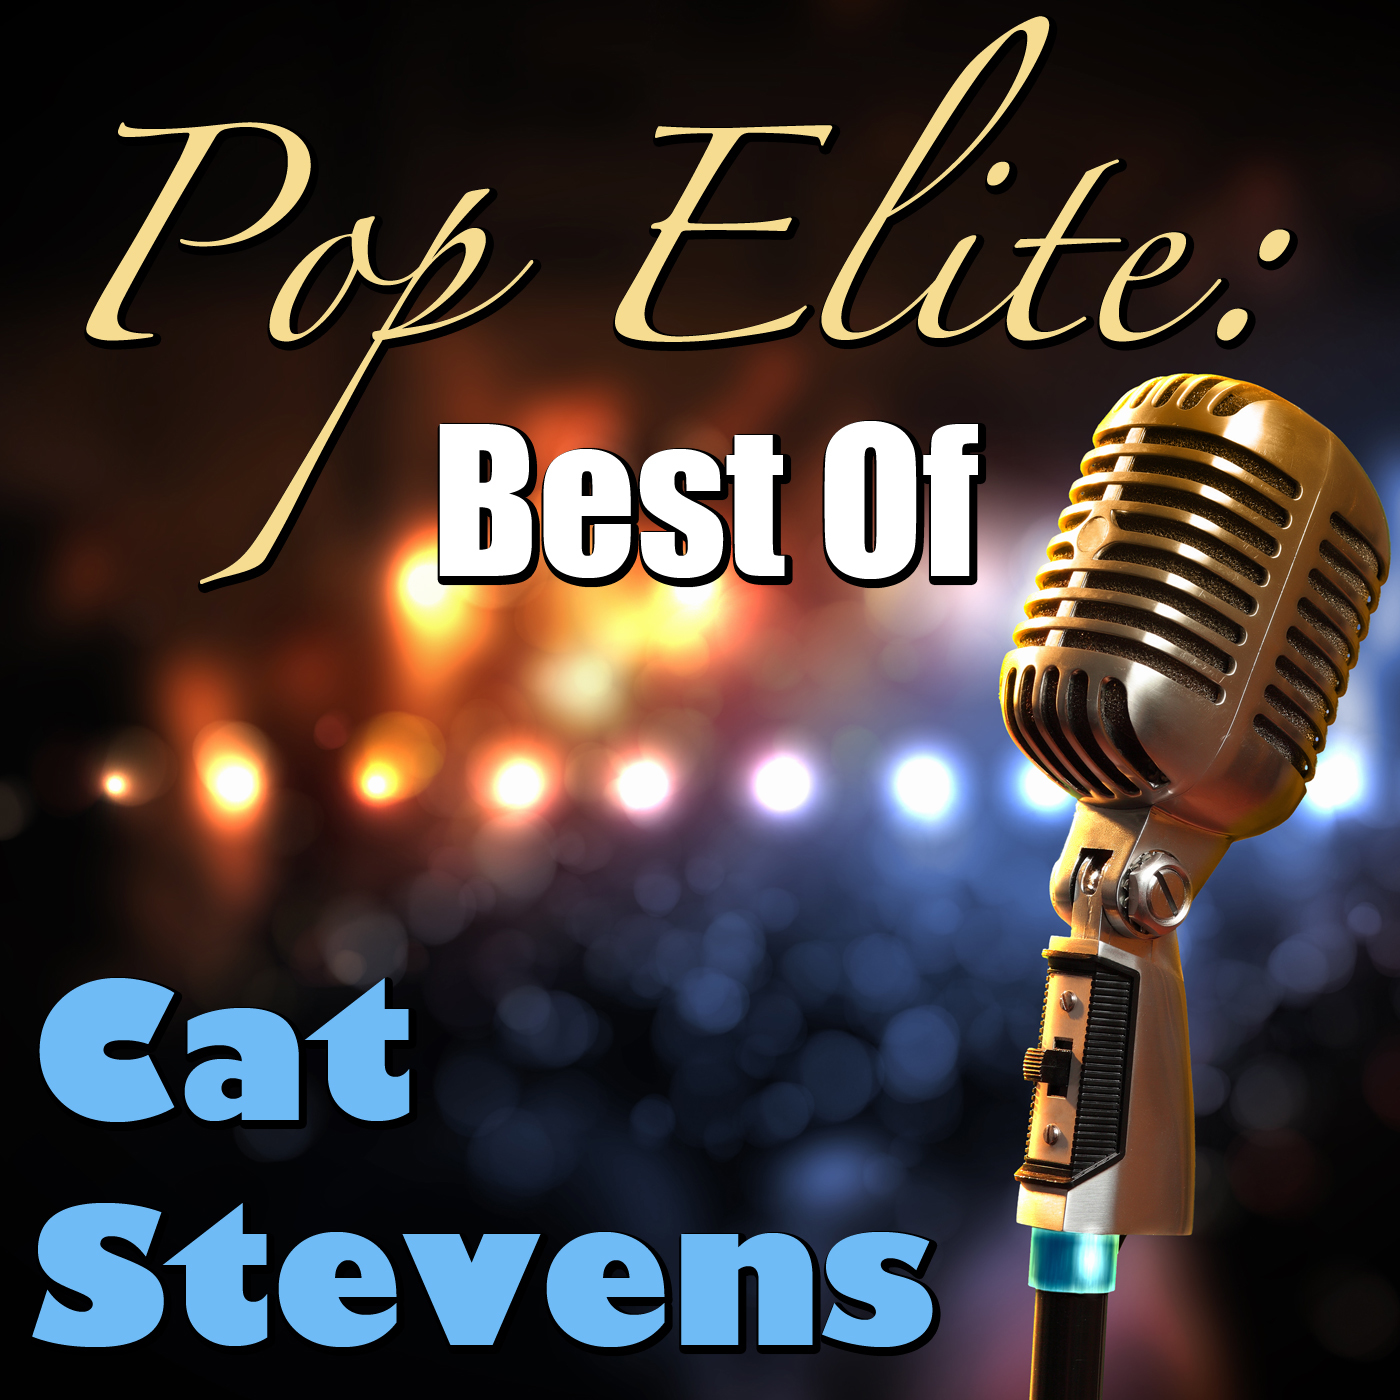 Pop Elite: Best Of Clyde Hart